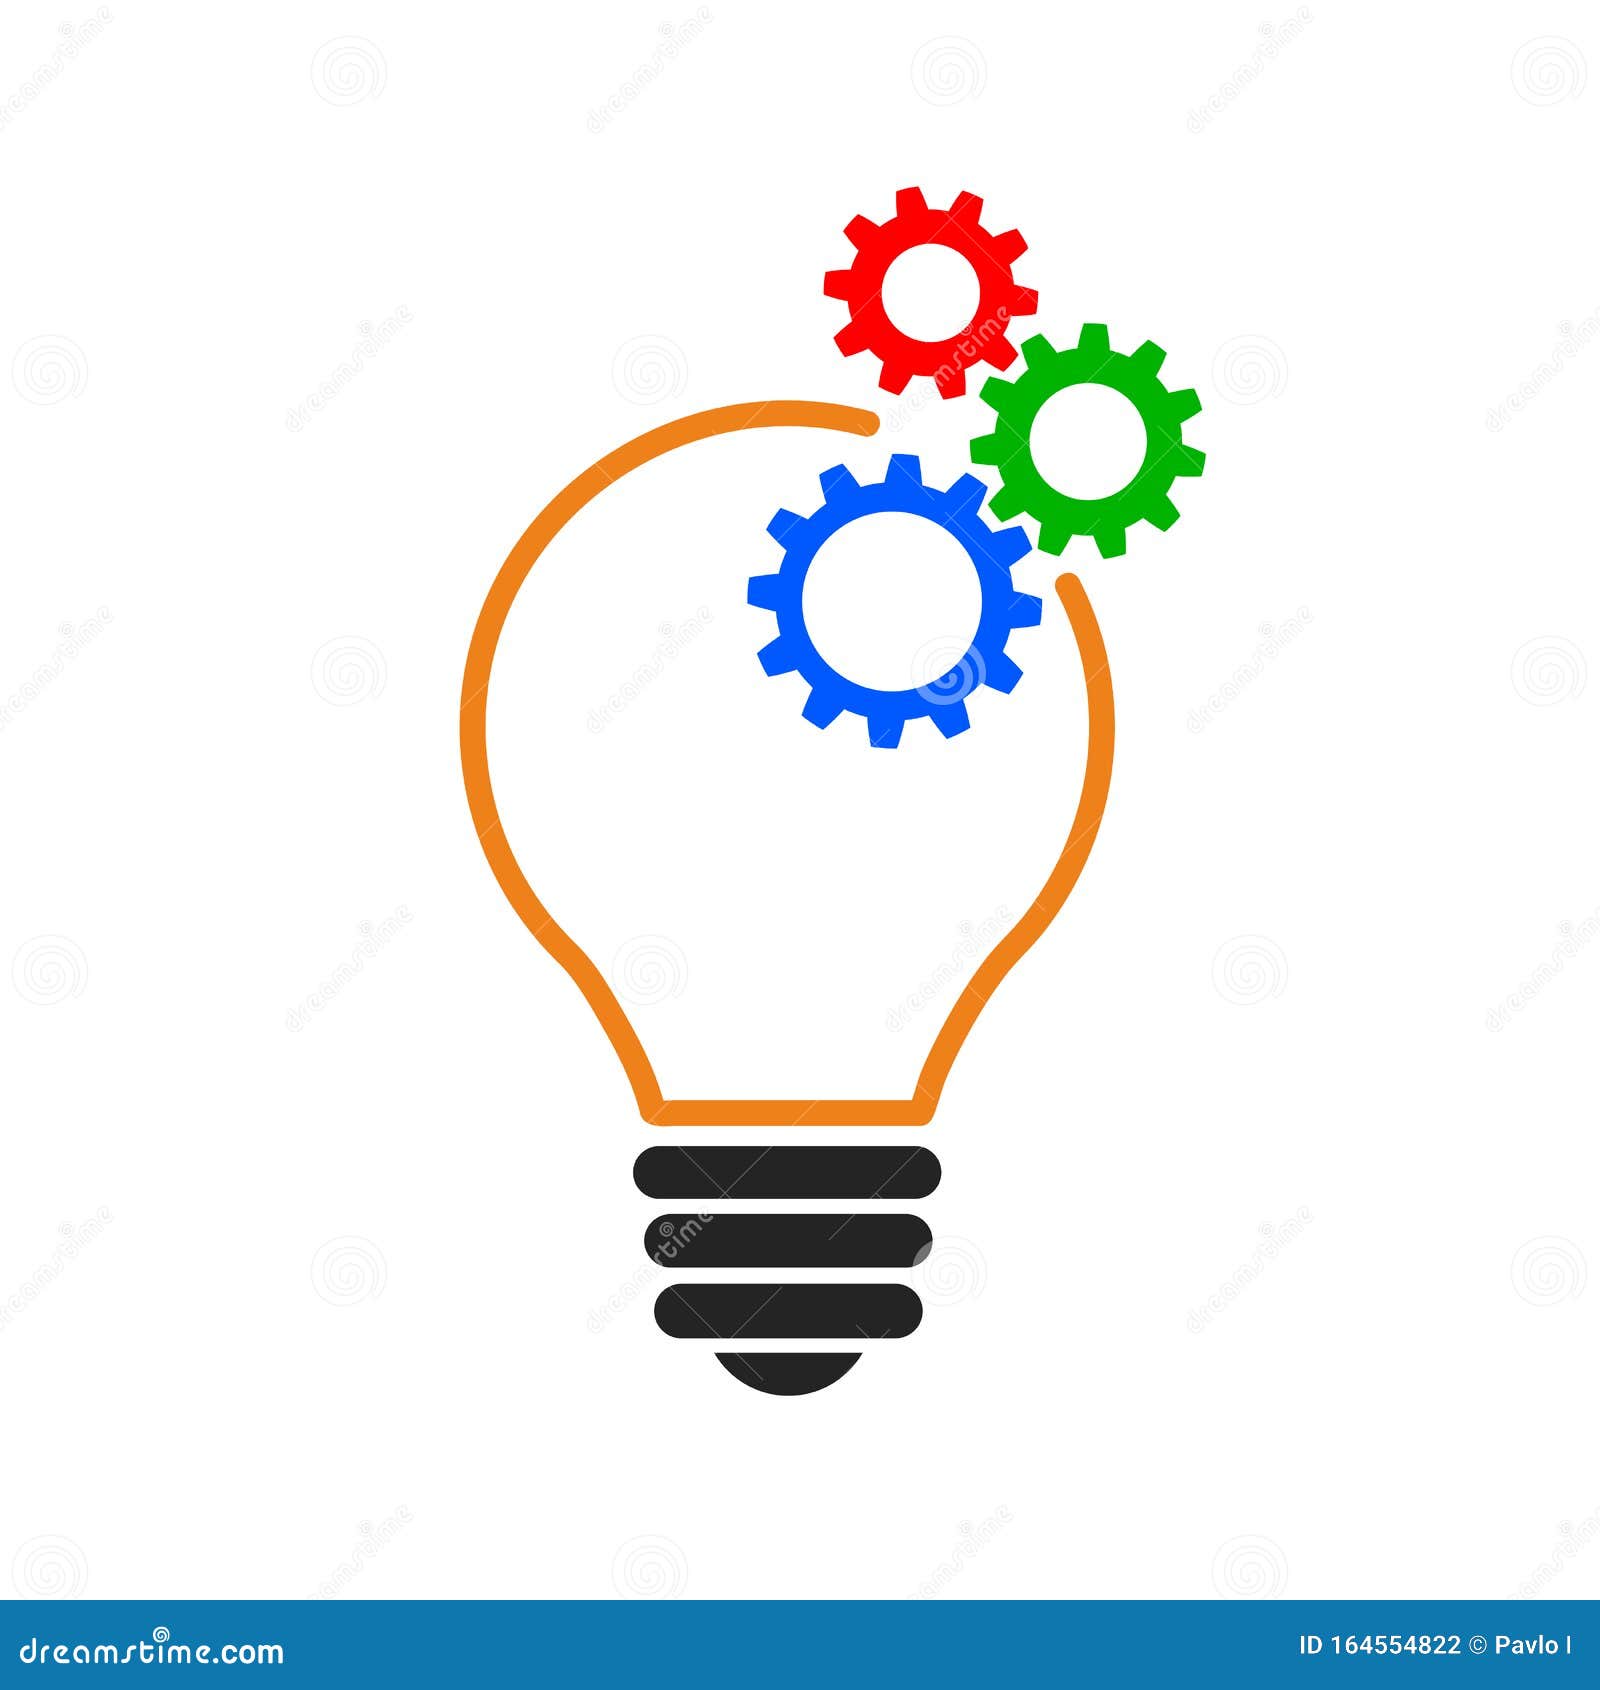 bulb with gears icon, idea concept, innovations Ã¢â¬â 